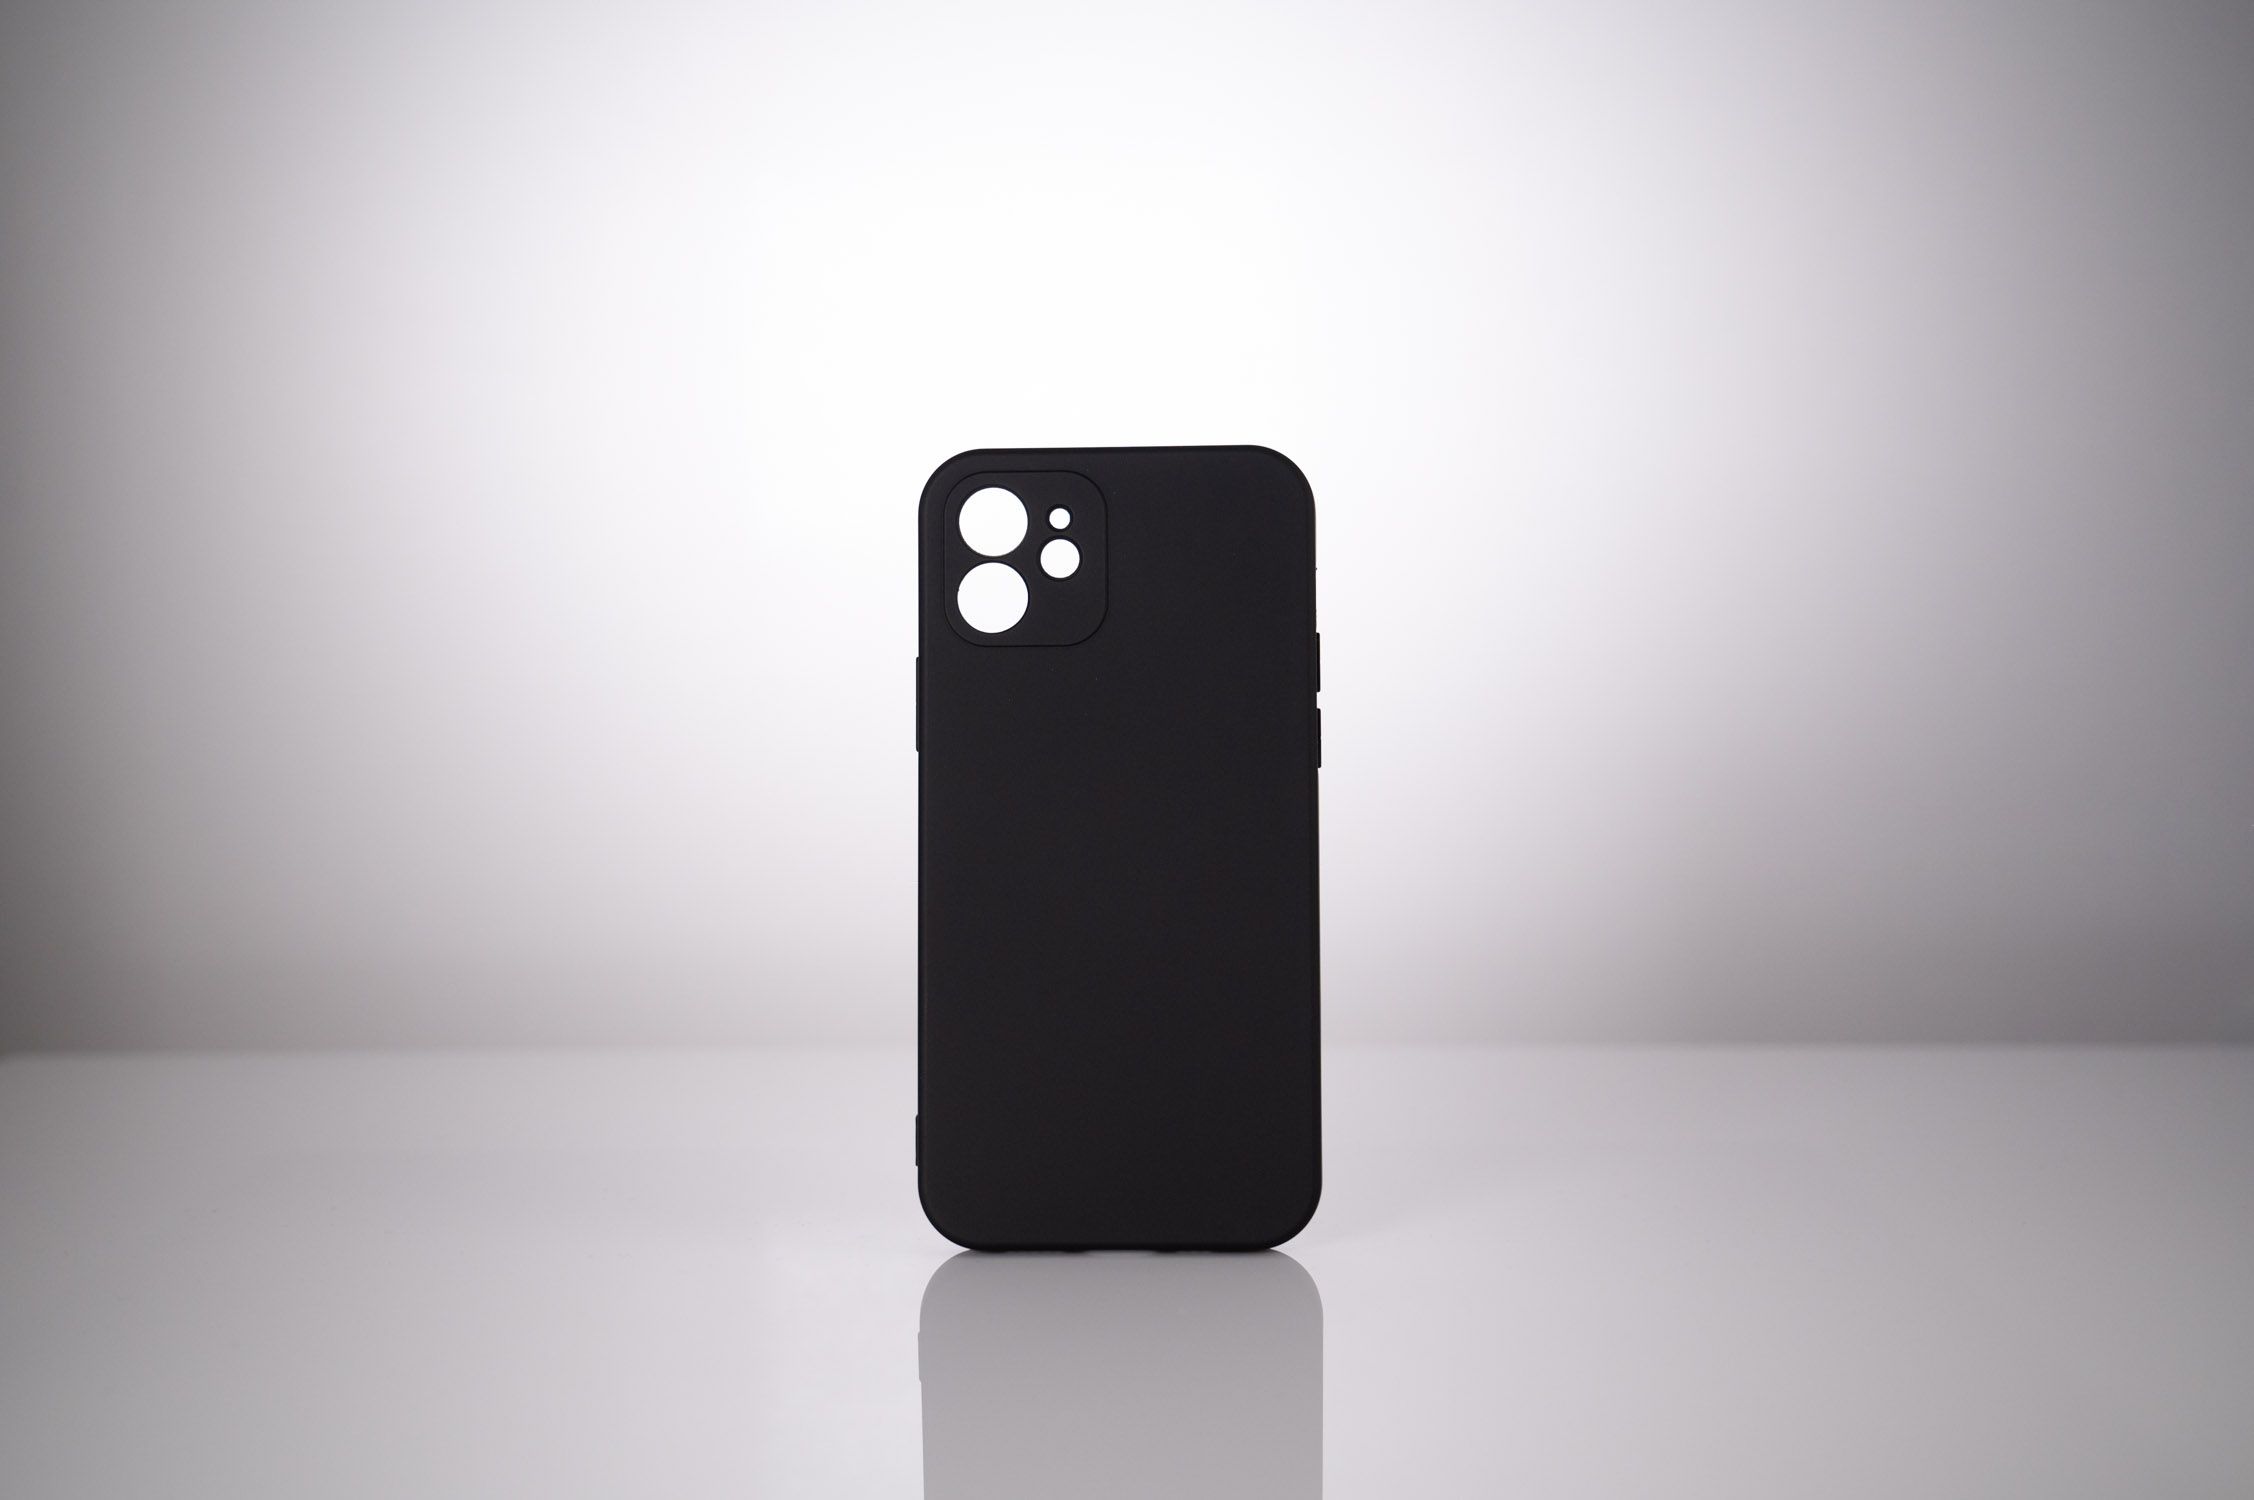 HUSA SMARTPHONE Spacer pentru Iphone 13, grosime 2mm, material flexibil silicon + interior cu microfibra, negru 